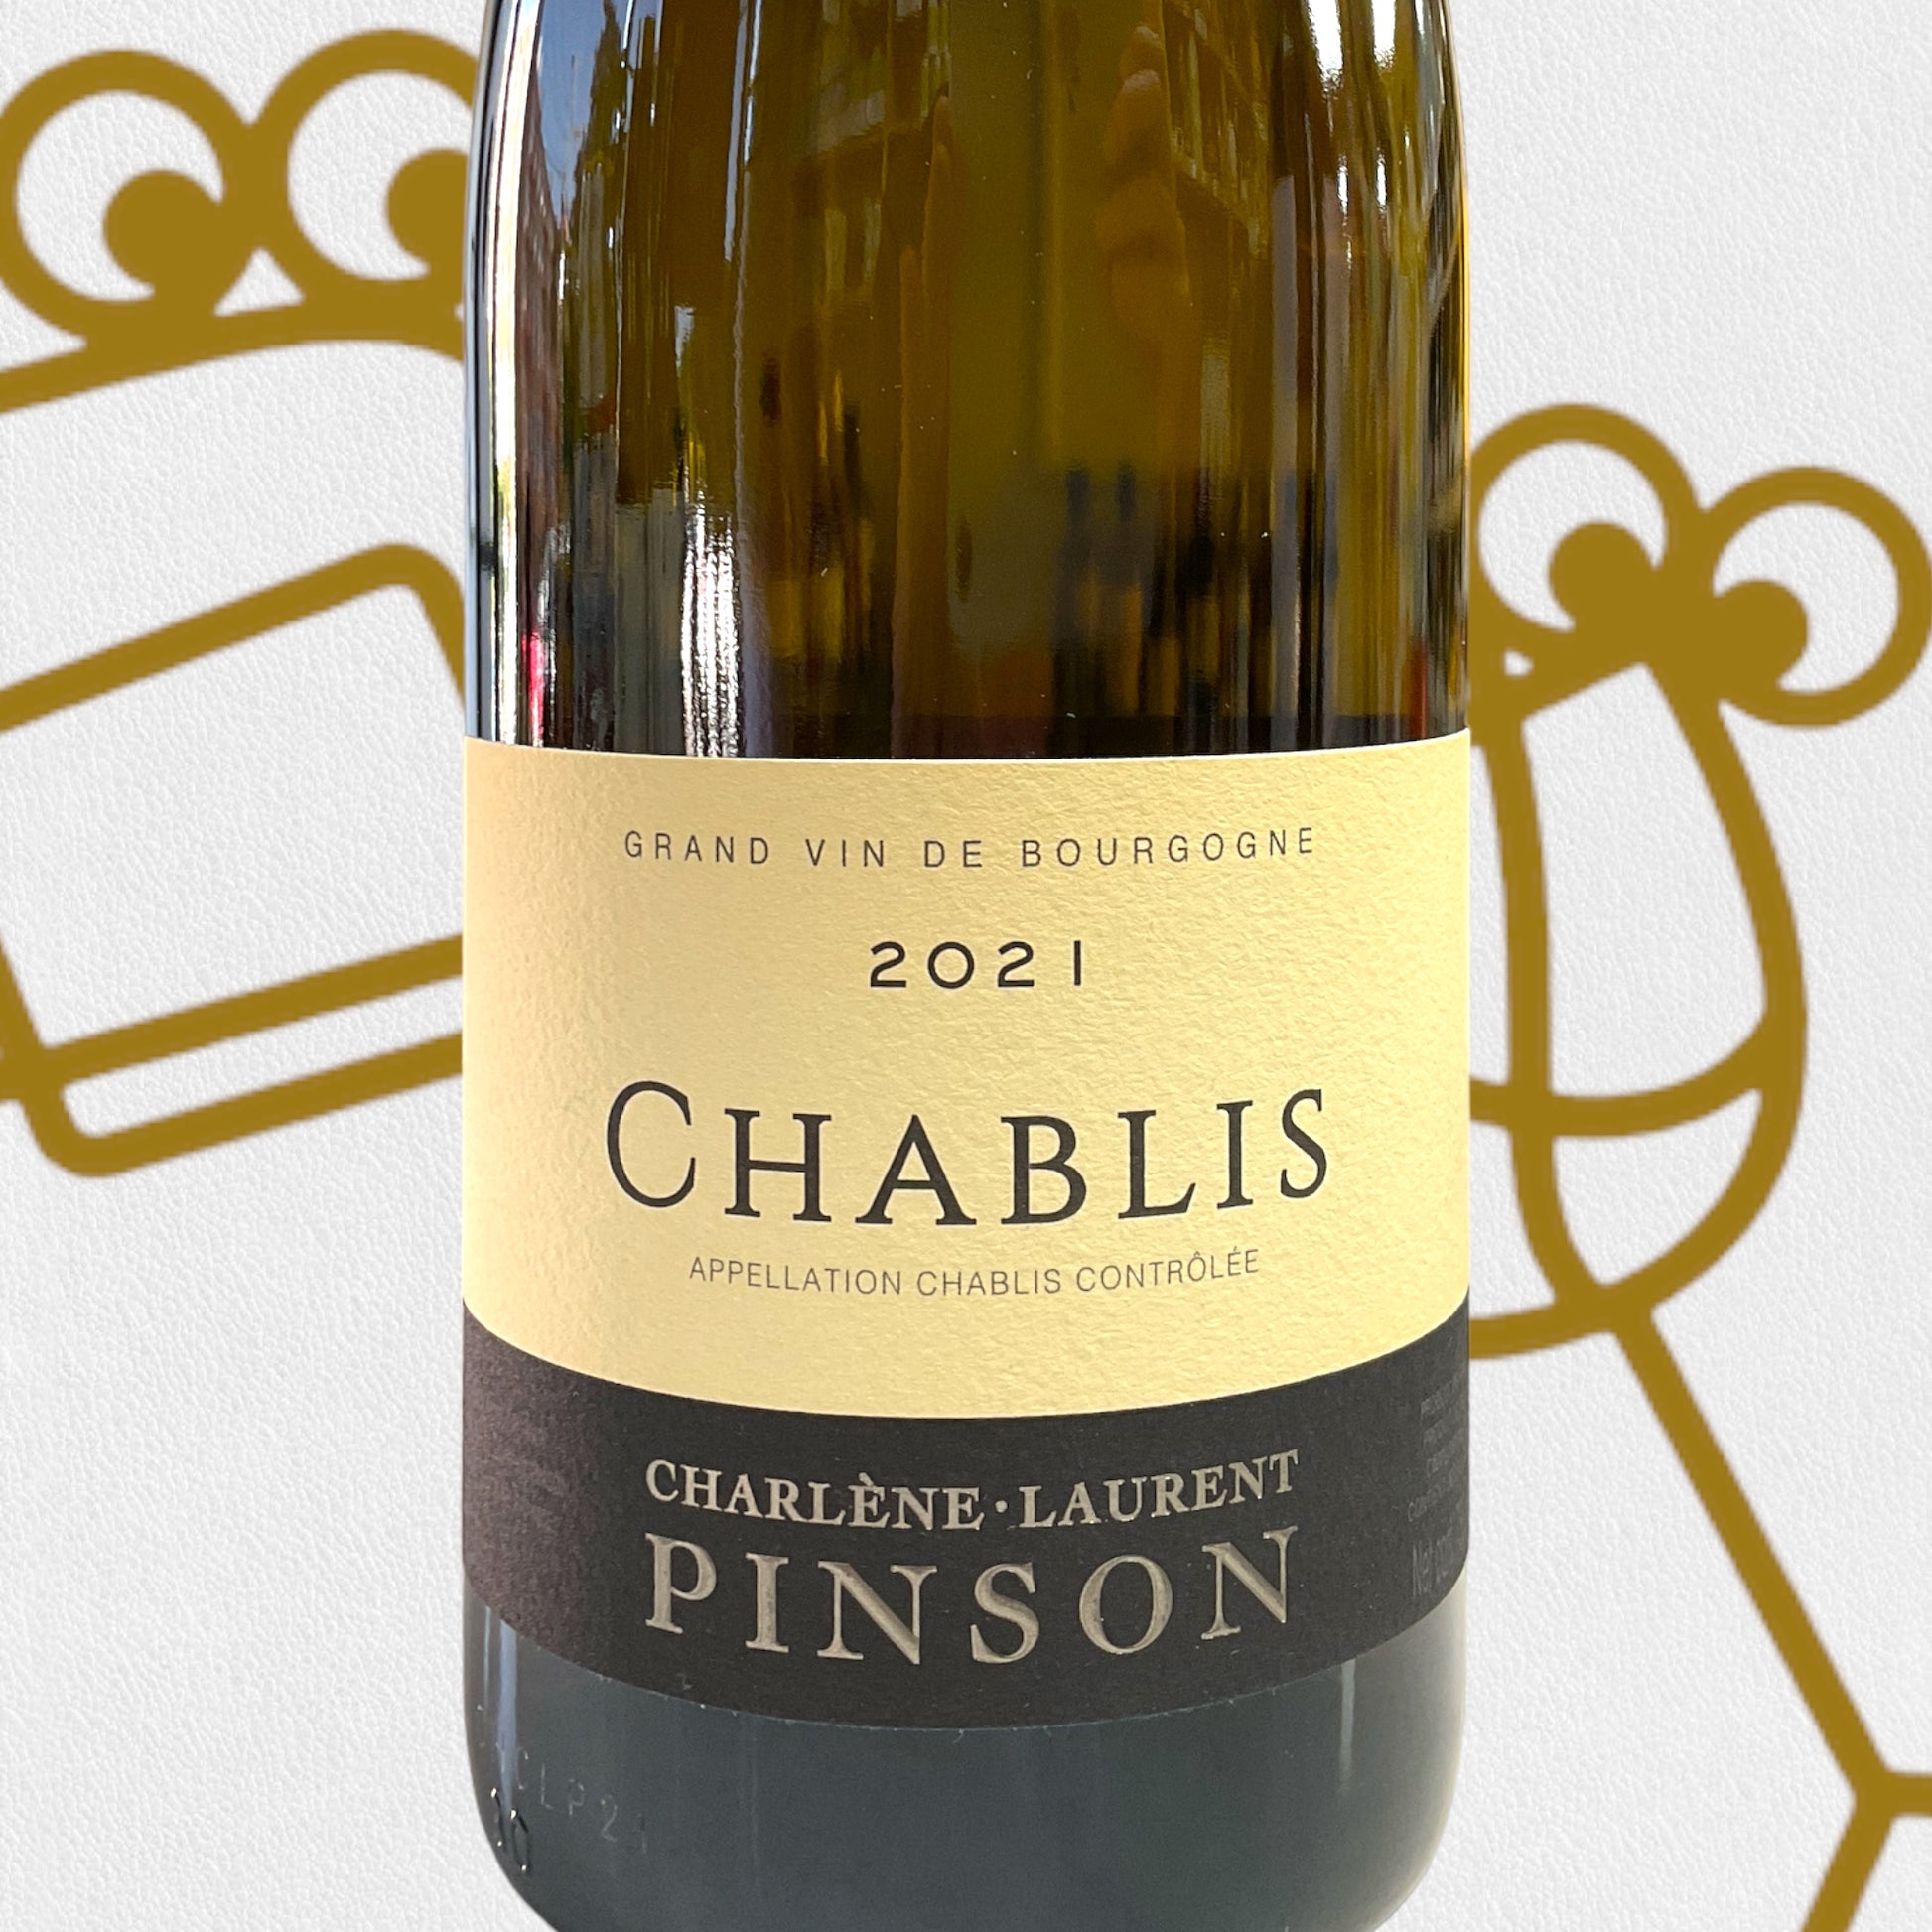 Charlene et Laurent Pinson Chablis 2021 Burgundy, France - Williston Park Wines & Spirits